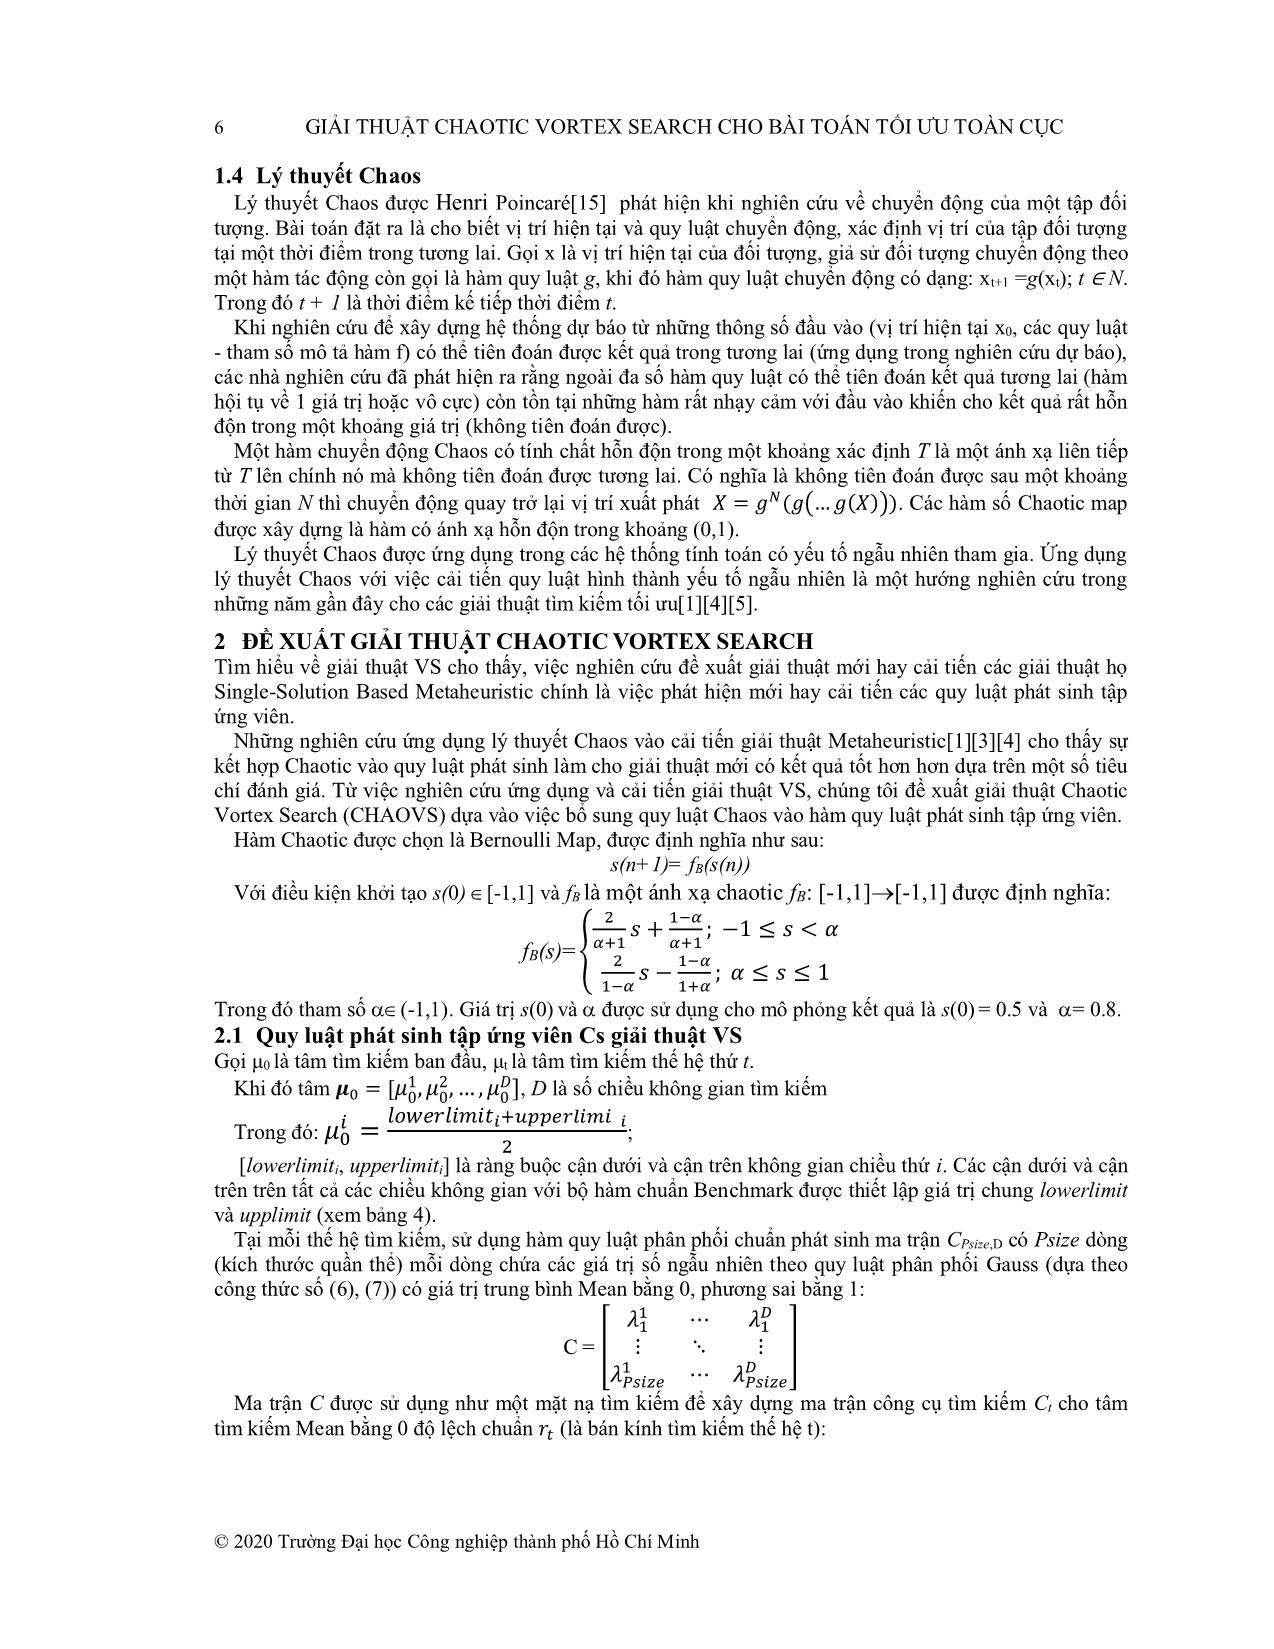 Giải thuật Chaotic Vortex Search cho bài toán tối ưu toàn cục trang 4